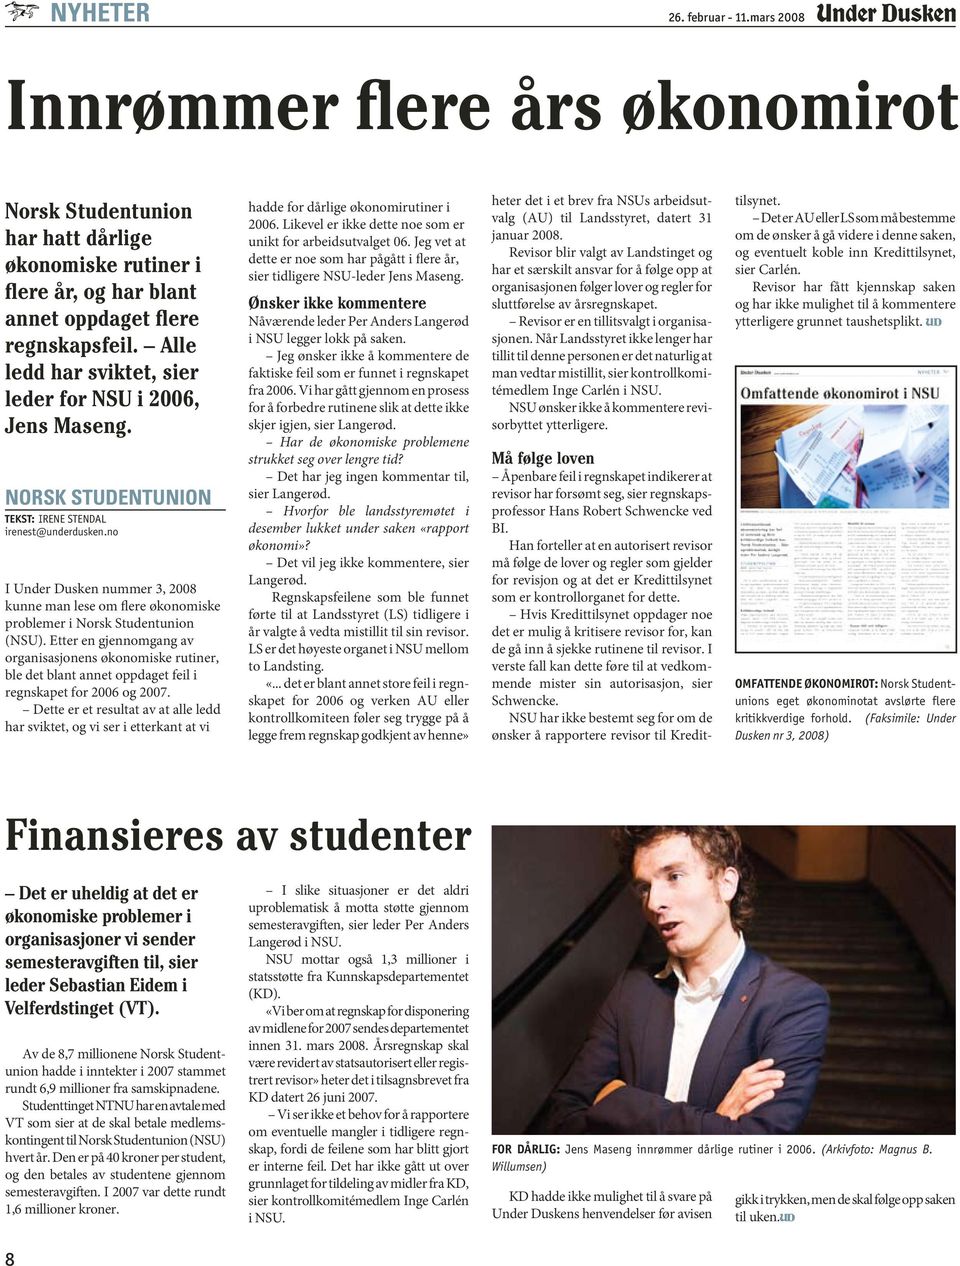 no I Under Dusken nummer 3, 2008 kunne man lese om flere økonomiske problemer i Norsk Studentunion (NSU).